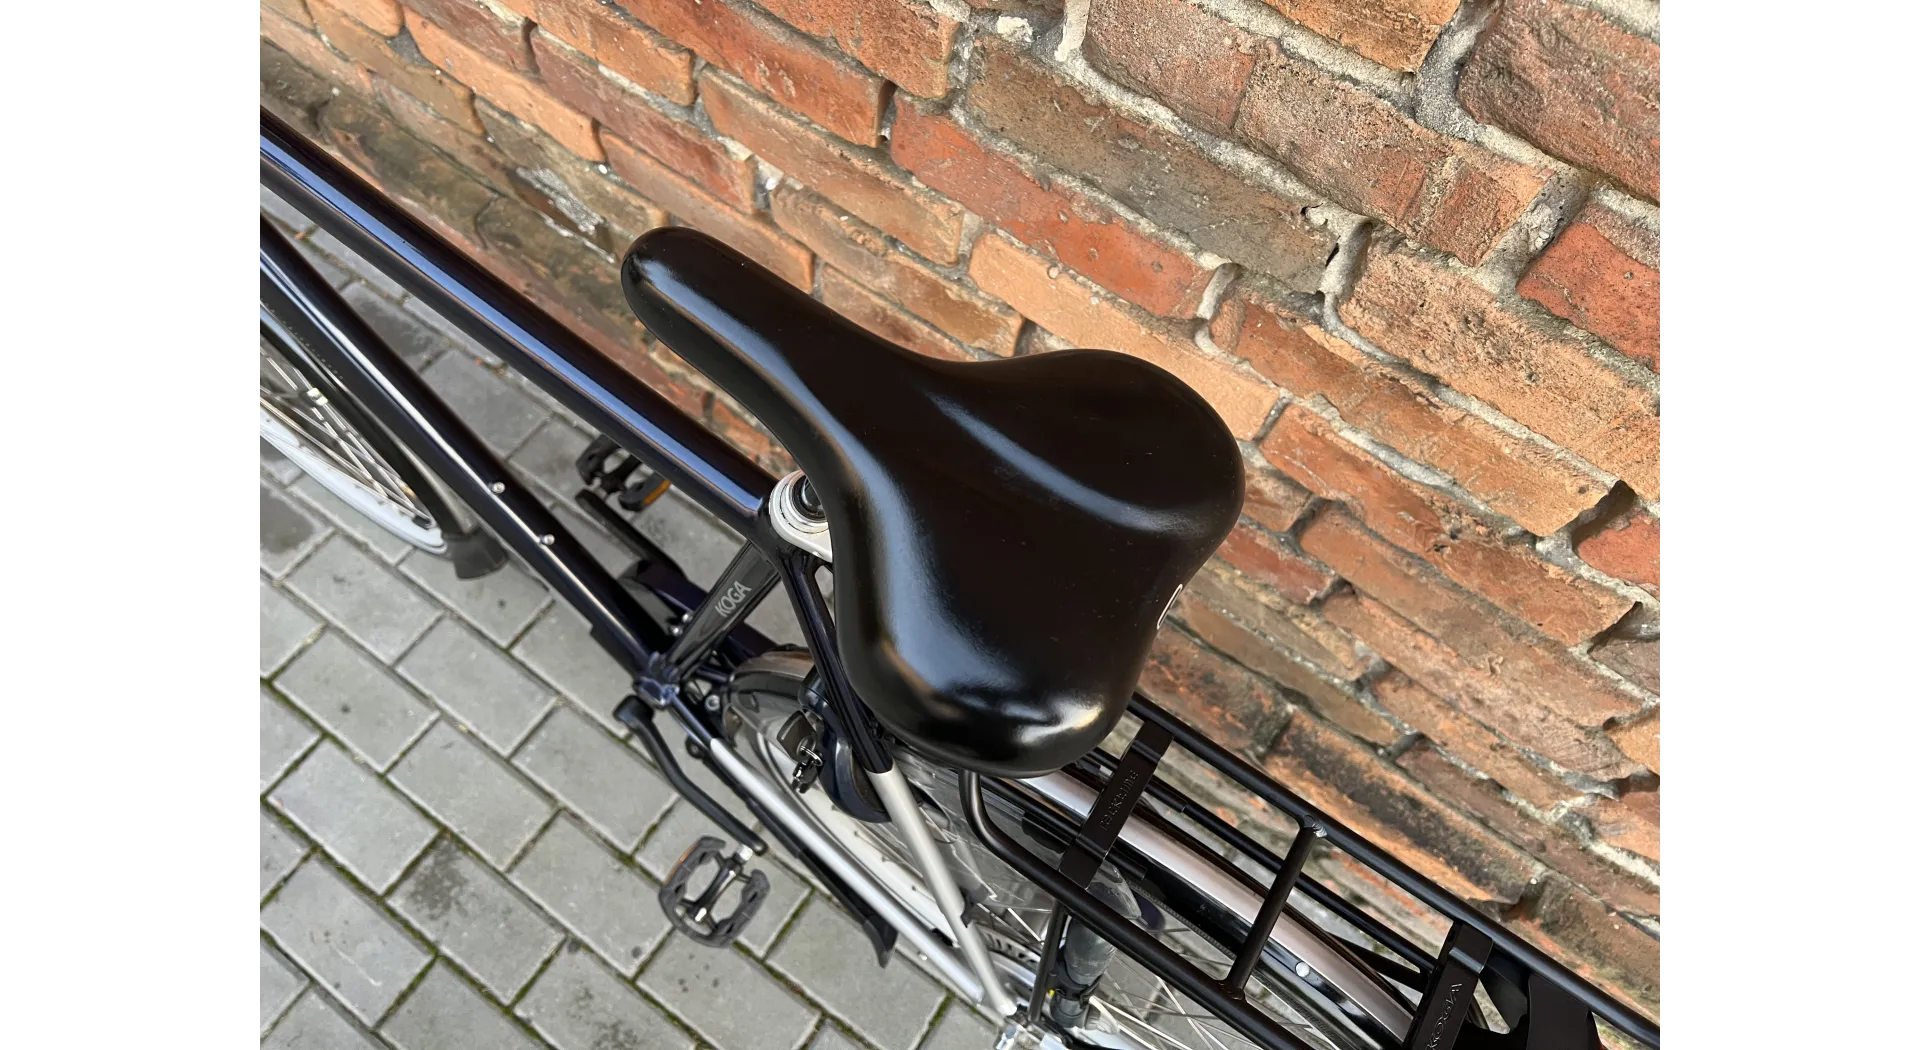 Koga Lite Ace 28'', rower holenderski, Nexus 8